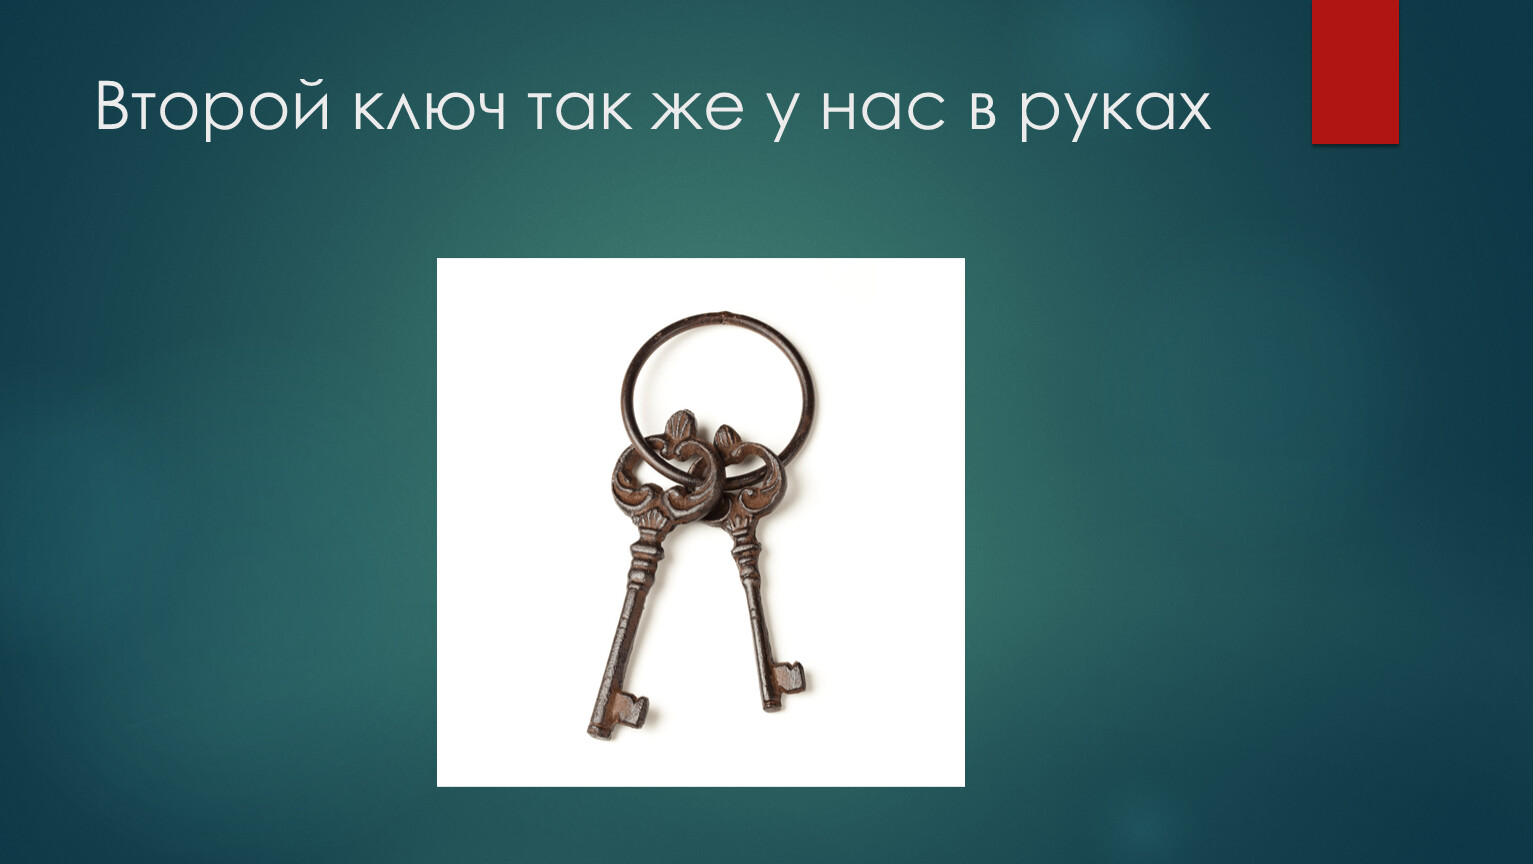 Нашел 3 ключа. Ключ 1/2. Три ключа презентация. Два ключика. Же ключ 2.